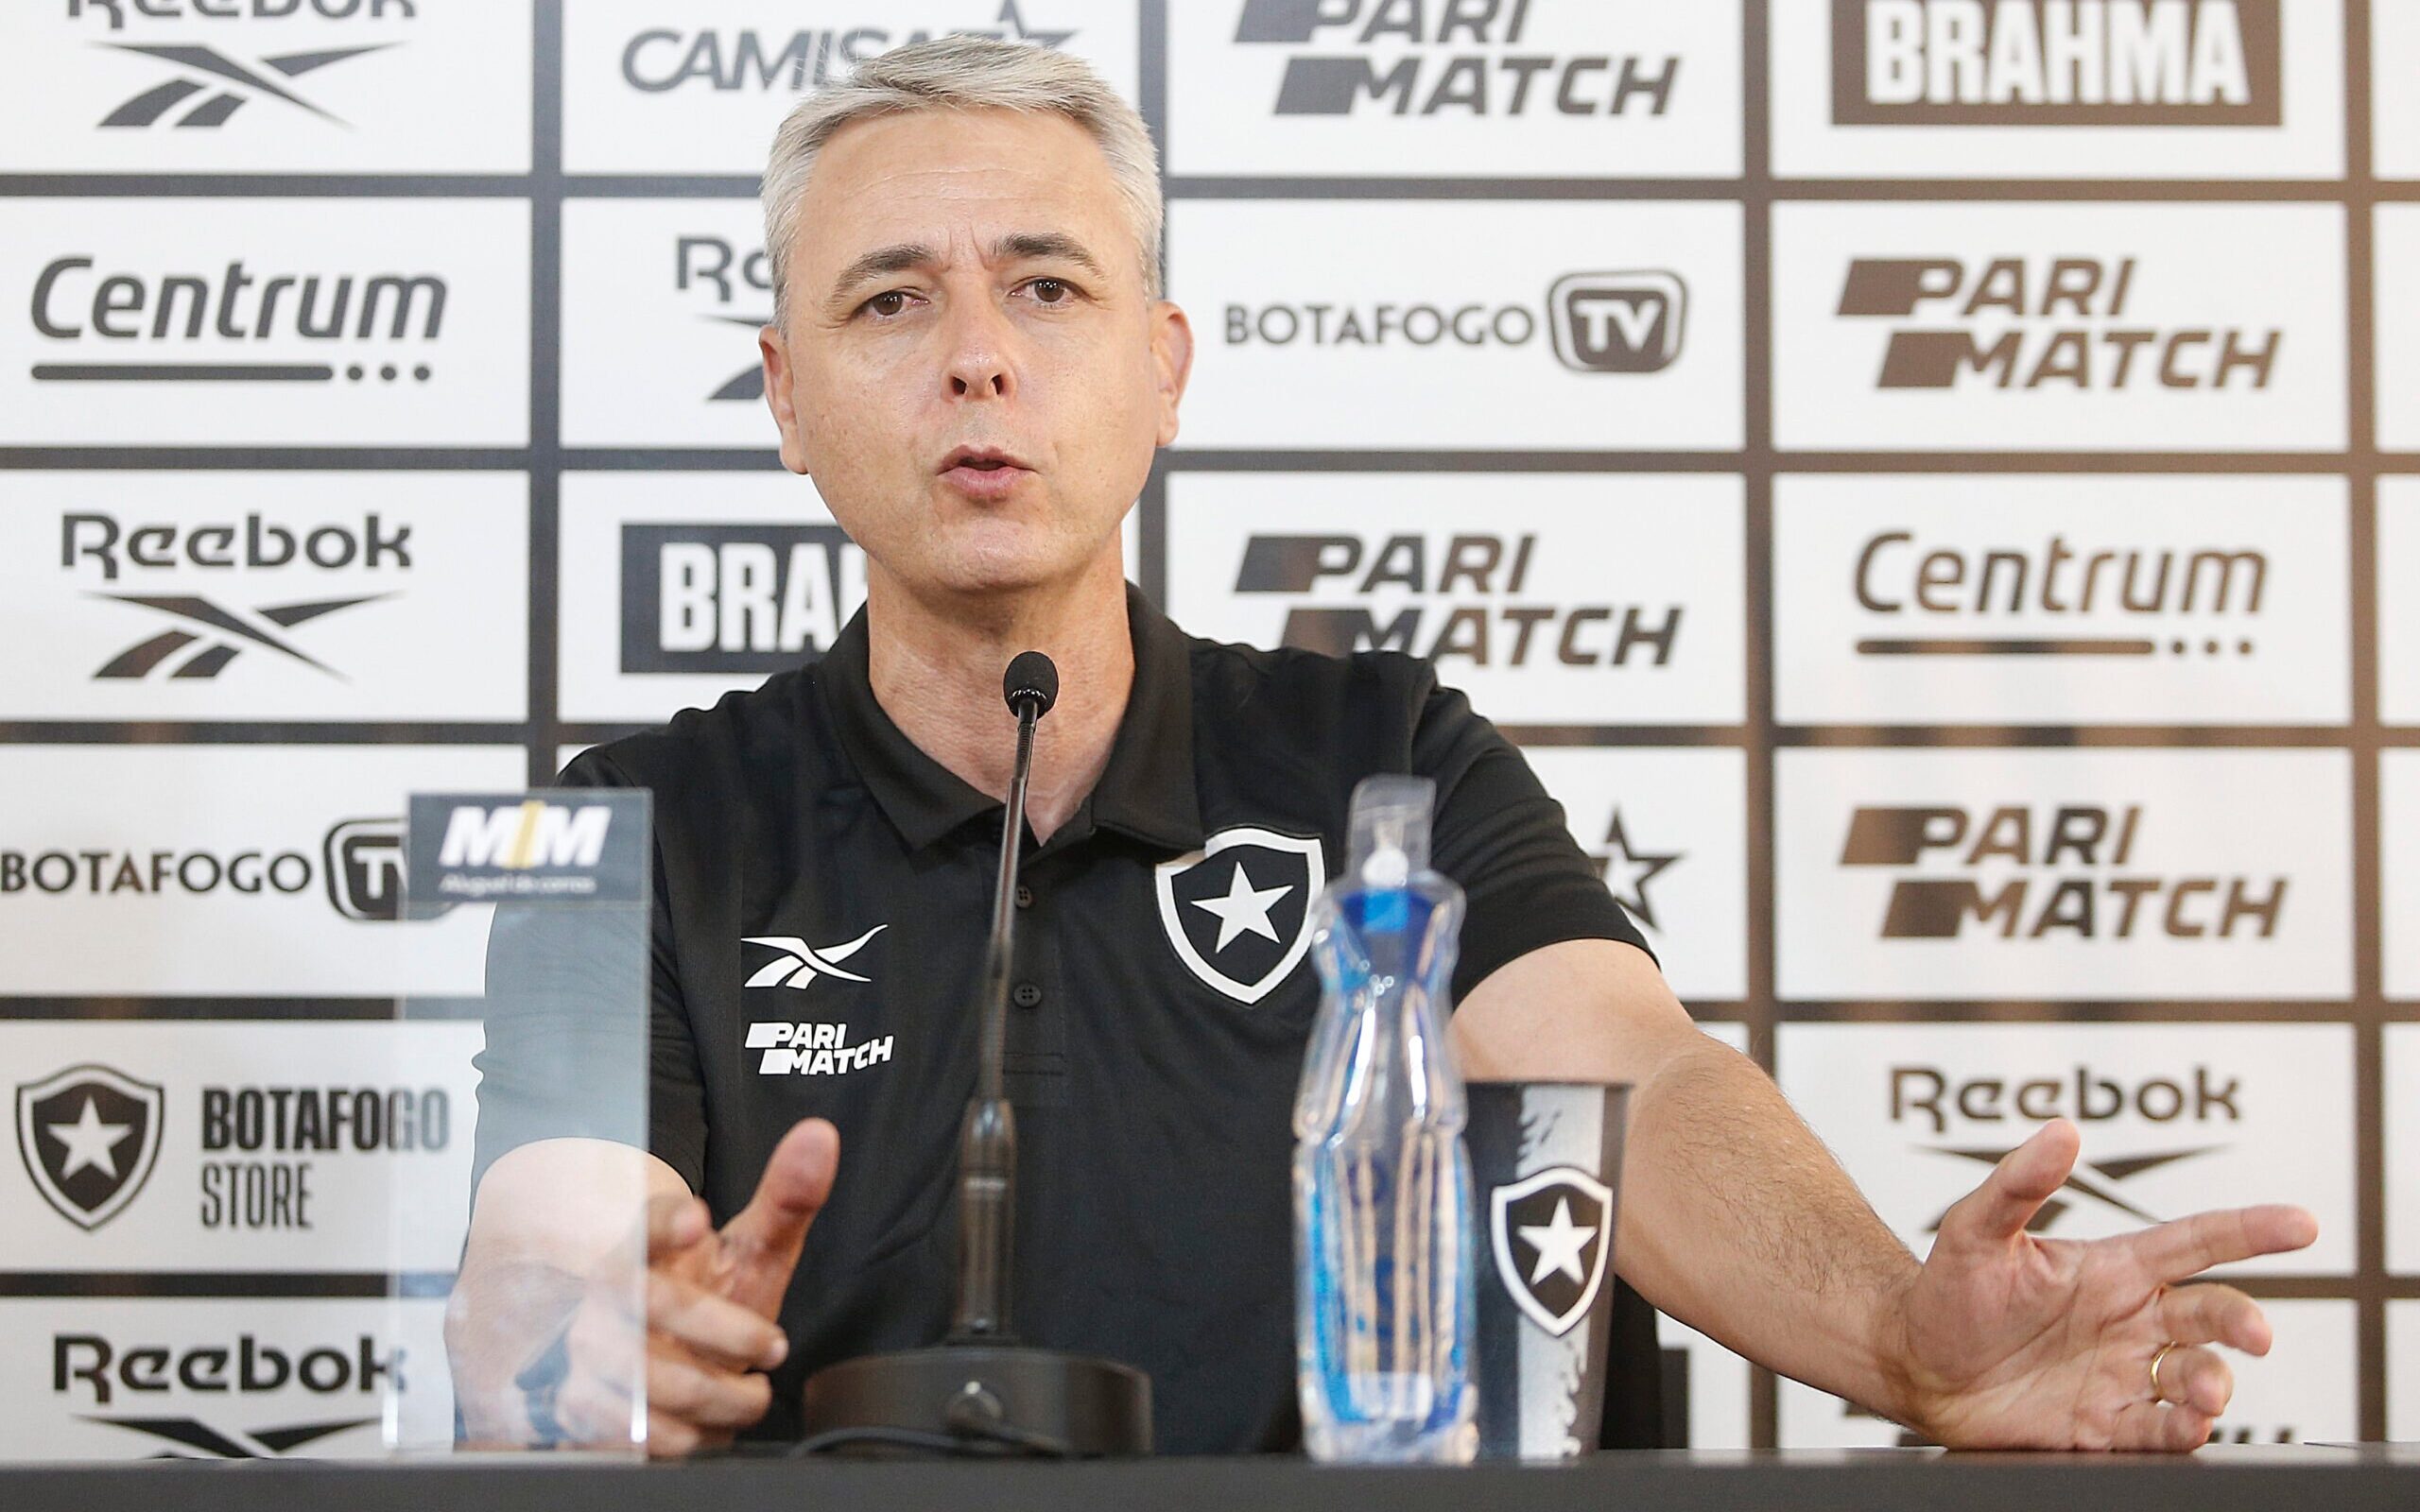 Benevenuto define 'gosto de derrota' em empate do Botafogo: 'Mandamos no  jogo